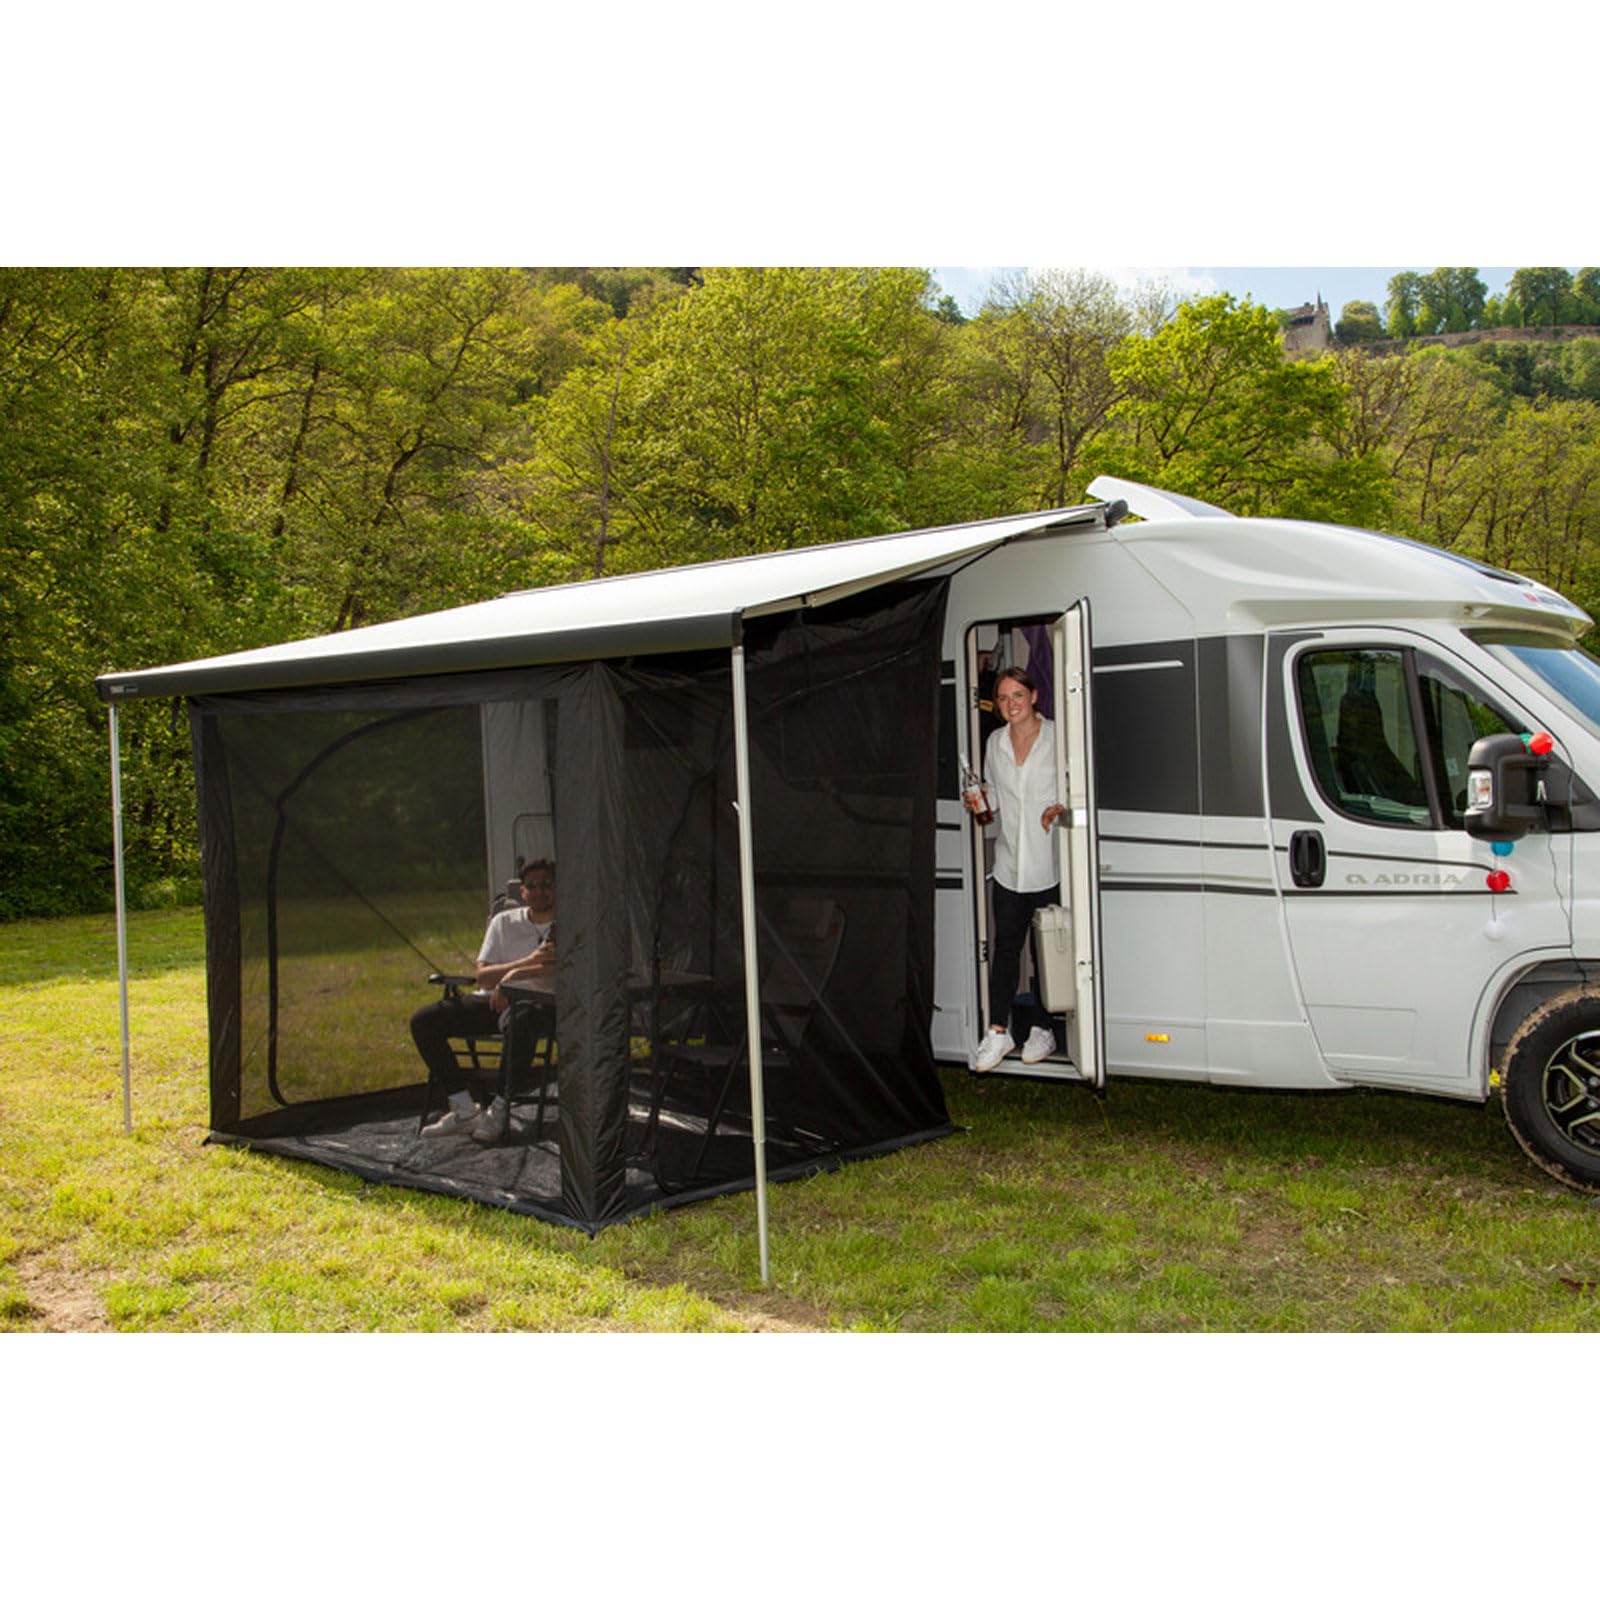 Reimo Vorzelt Moskito Free Premium 240/300 Camping Insektenschutz Moskitonetz Zelt für Markise (300 x 230 x 180-240 cm) von Reimo